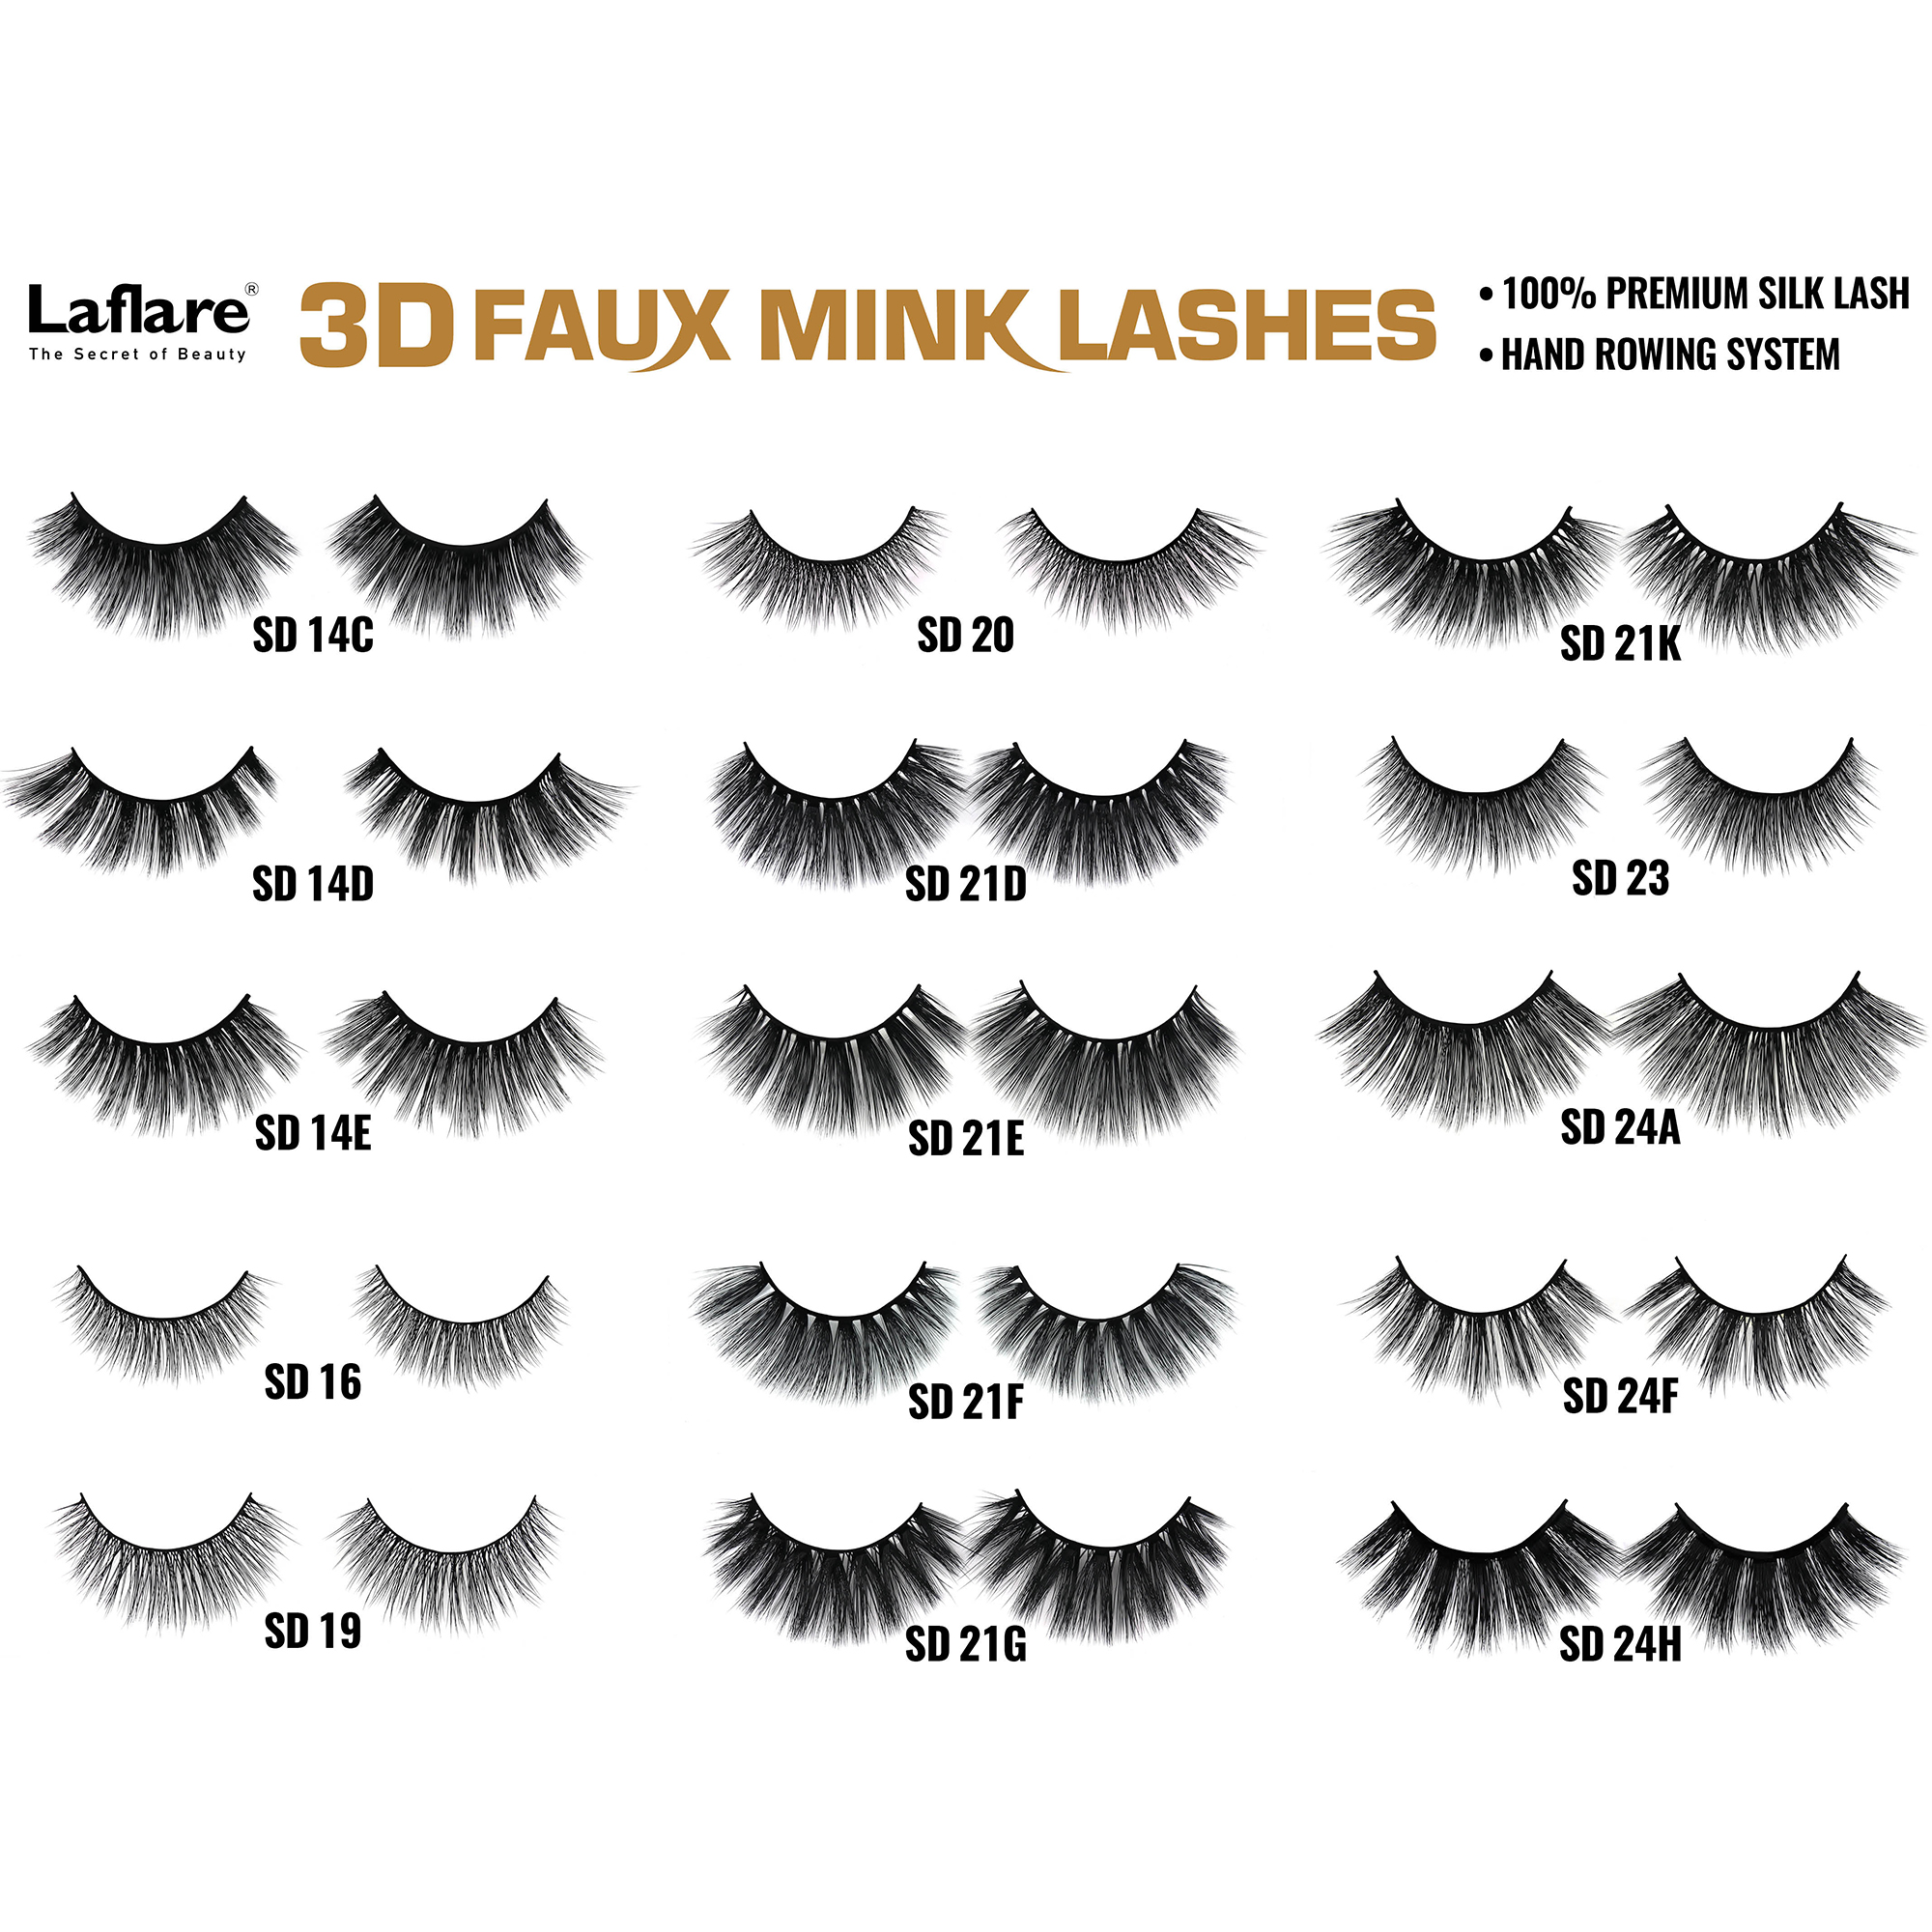 LAFLARE 3d Faux Mink Lashes - SD04C